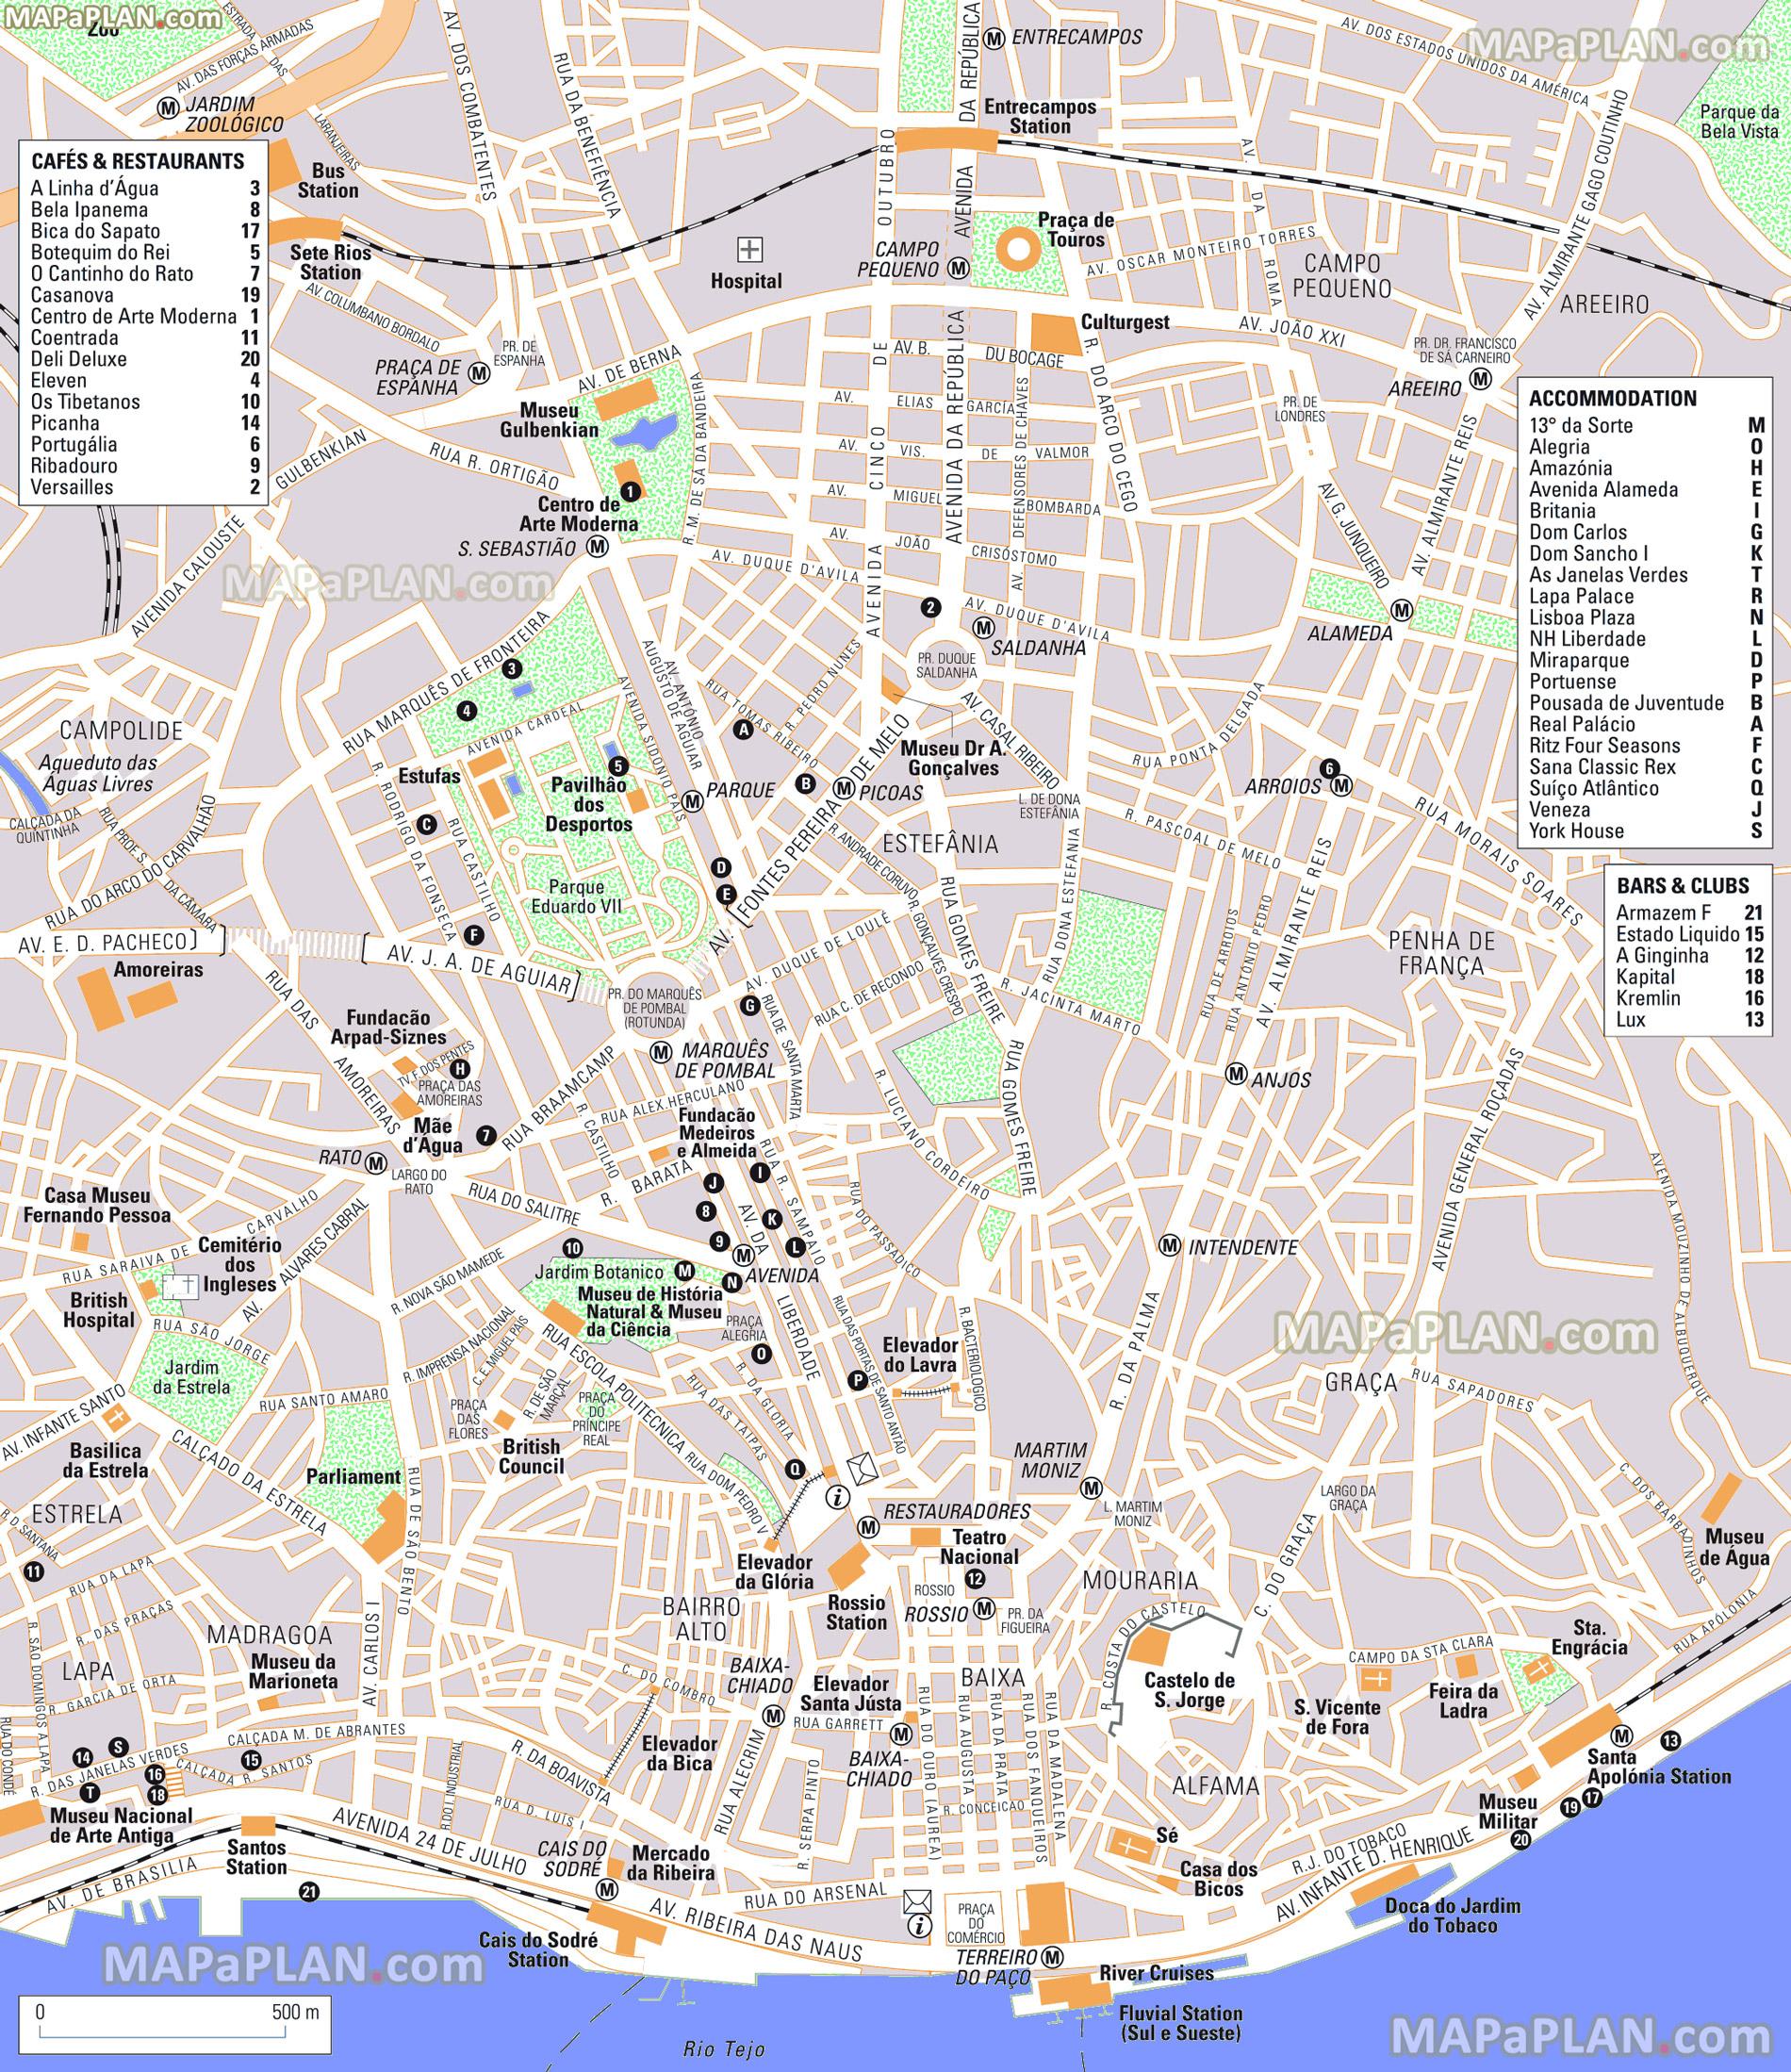 Lisbon Centre Map